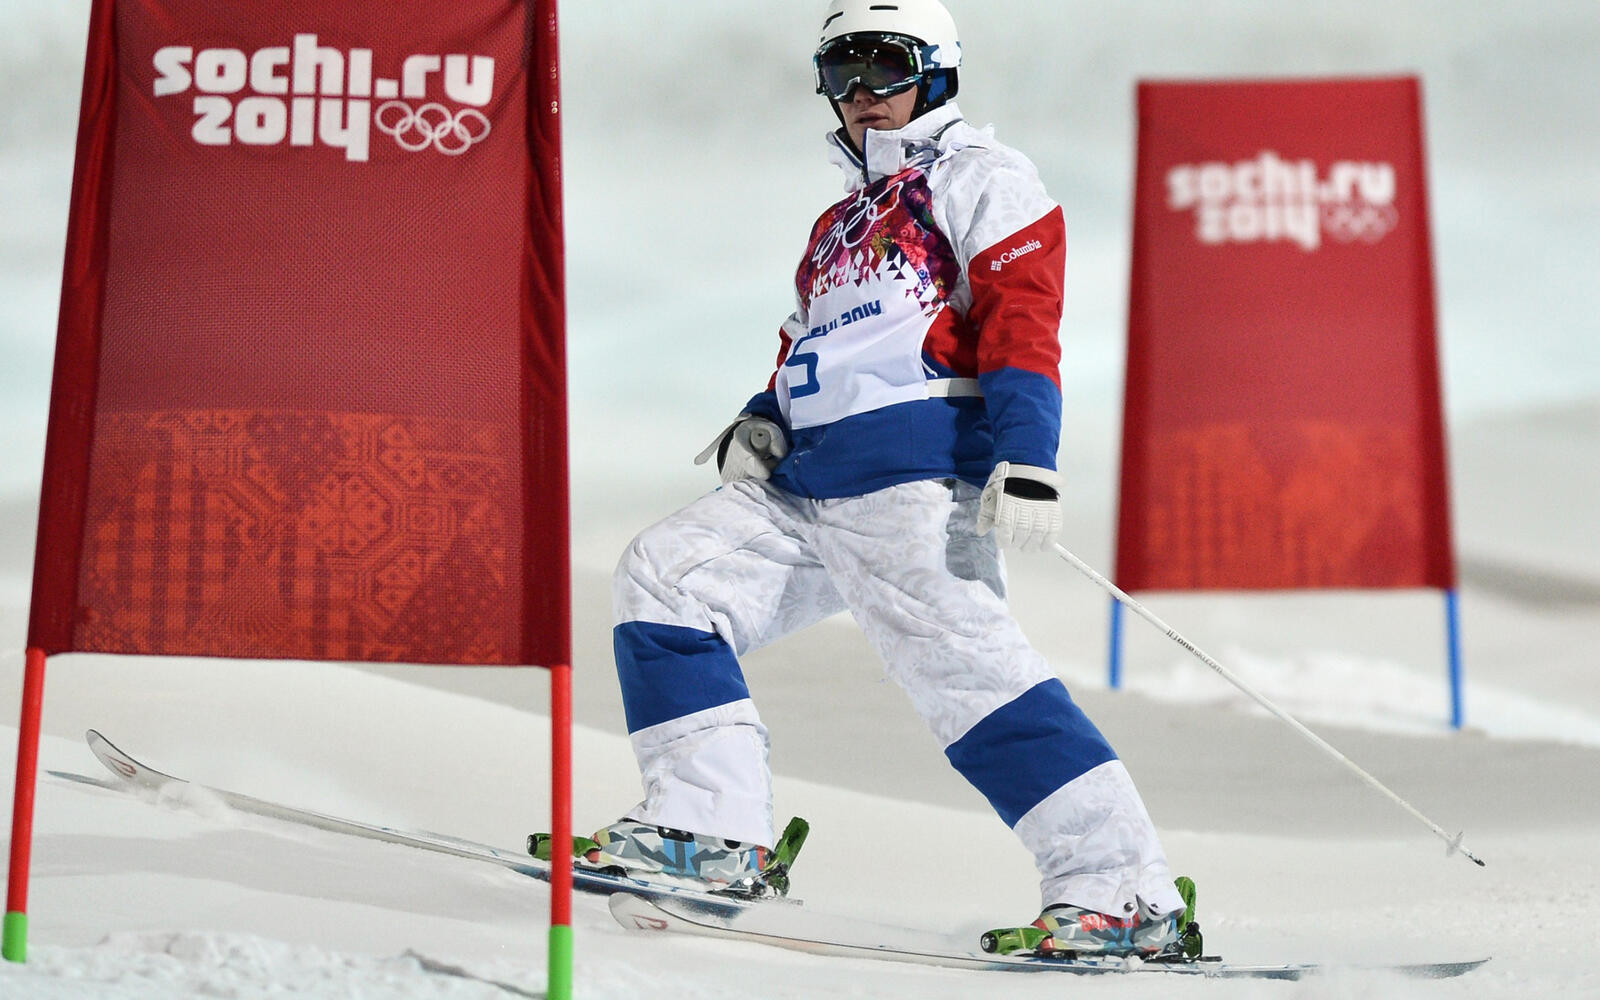 桌面上的壁纸奥林匹克运动会 索契 滑雪者